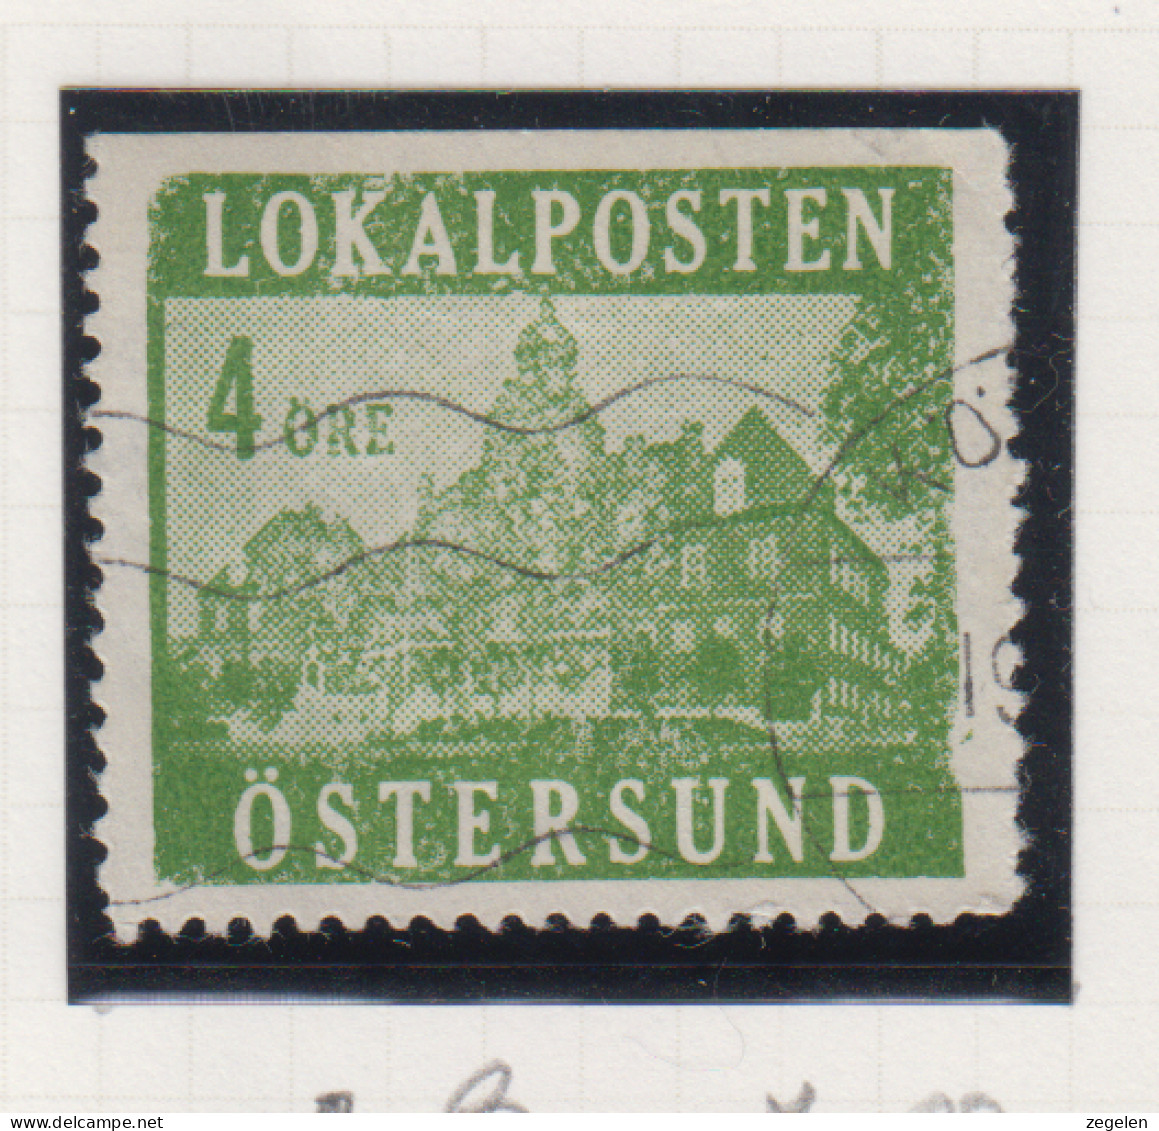 Zweden Lokale Zegel Cat. Facit Sverige 2000 Private Lokaalpost Östersund Lokalposten 1 - Local Post Stamps